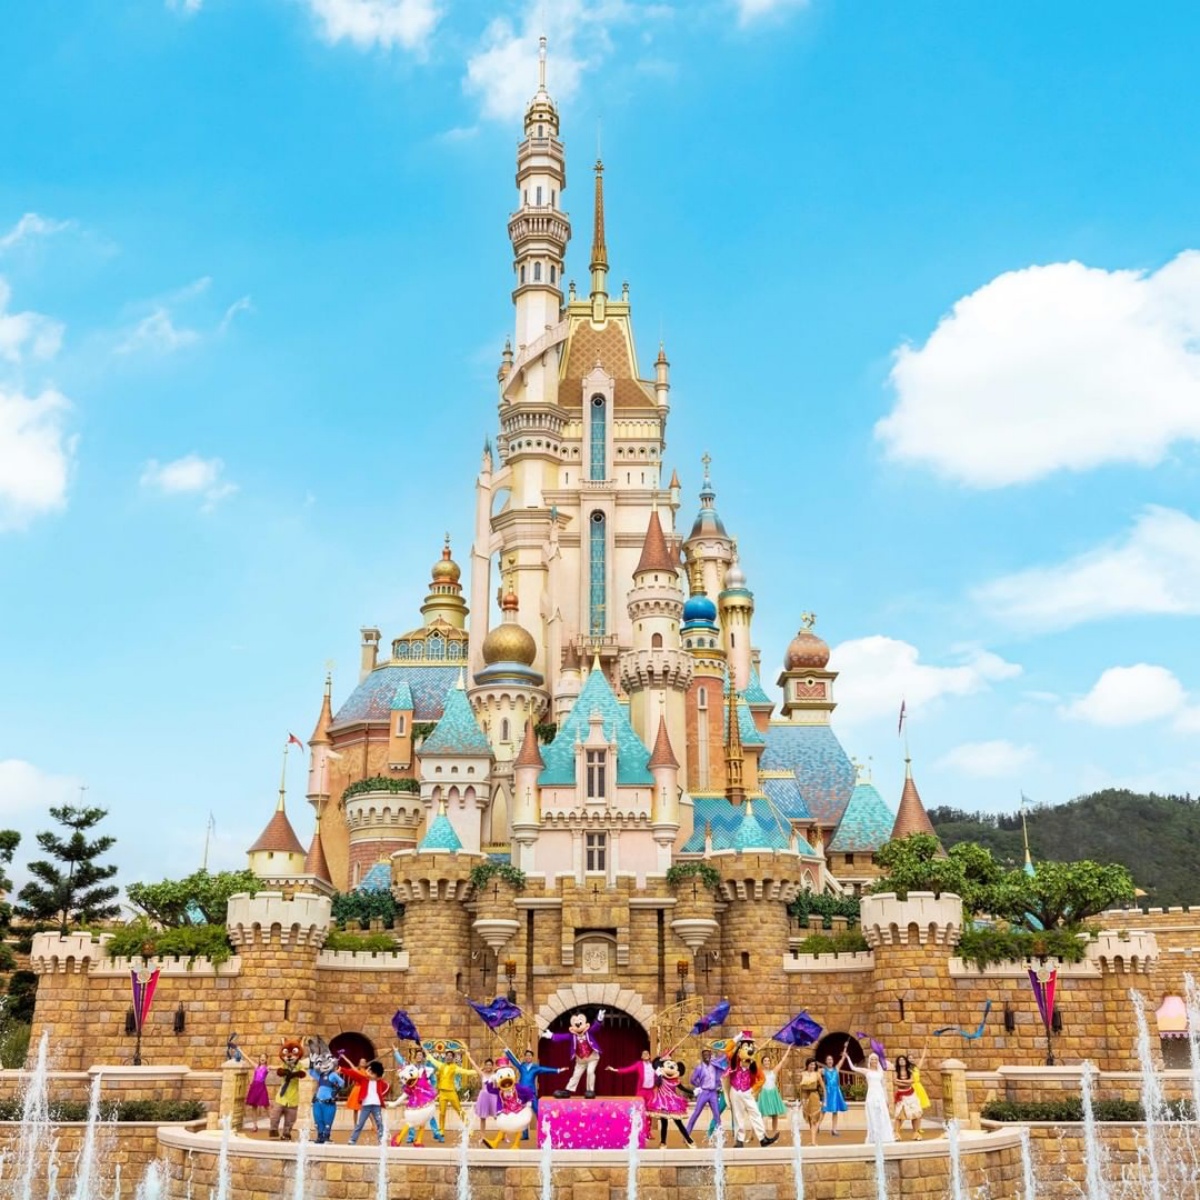 全球第７座「迪士尼樂園」插旗韓國！占地150萬坪、亞洲第２大度假村